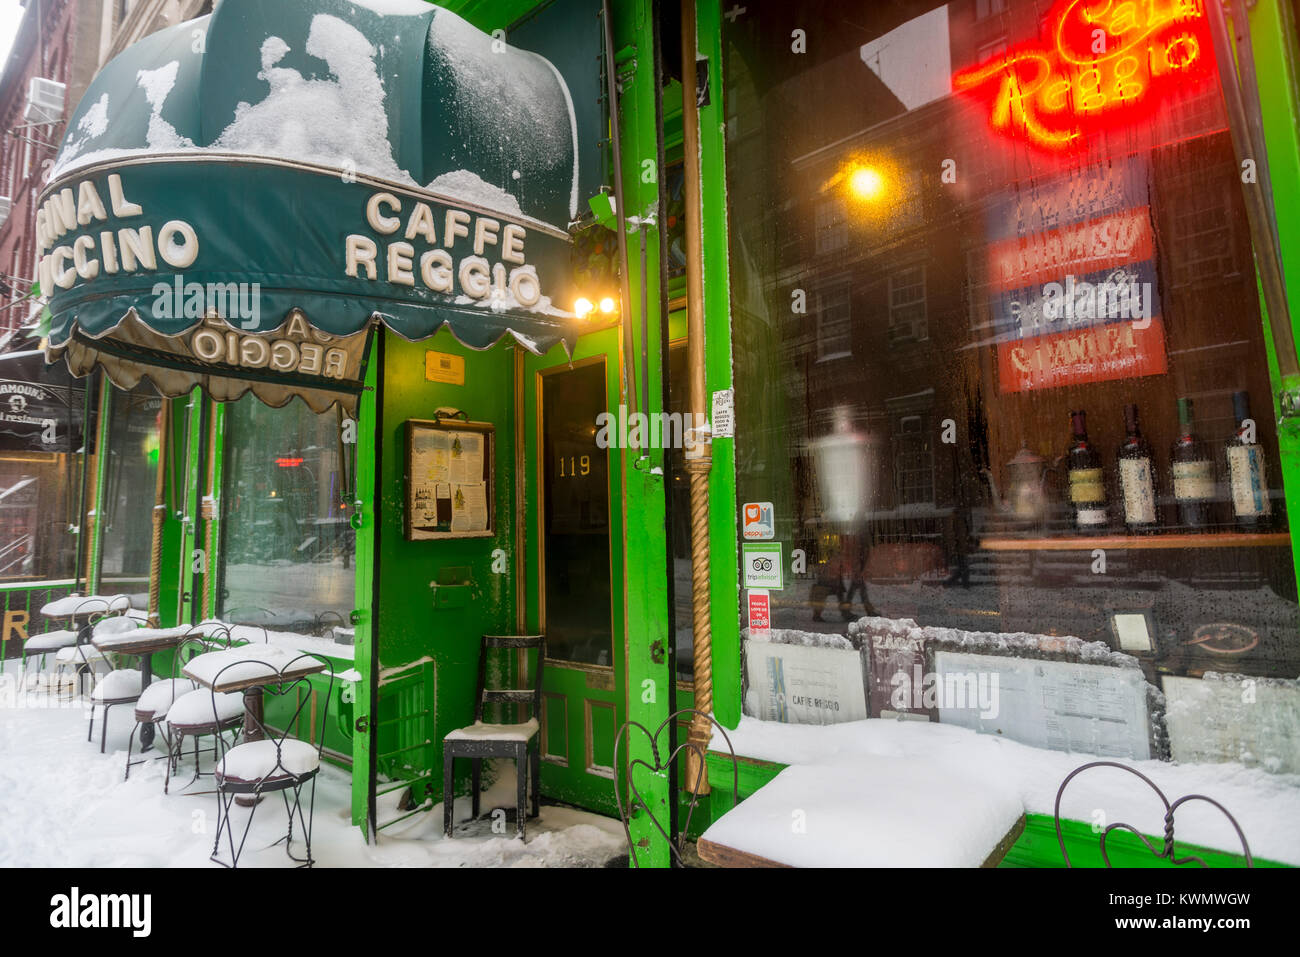 Nueva York, Estados Unidos. El 4 de enero, 2018. Los neoyorquinos llevará a través de la primera tormenta de nieve de 2018. La inusual tormenta, llamado 'bomba' Ciclón cubrió la parte oriental de los Estados Unidos, desde Florida hasta el noreste y se intensificó el miércoles. Se espera que sea uno de los más fuertes tormentas en la historia de los Estados Unidos. Crédito: ©Stacy Walsh Rosenstock/Alamy Live News Foto de stock